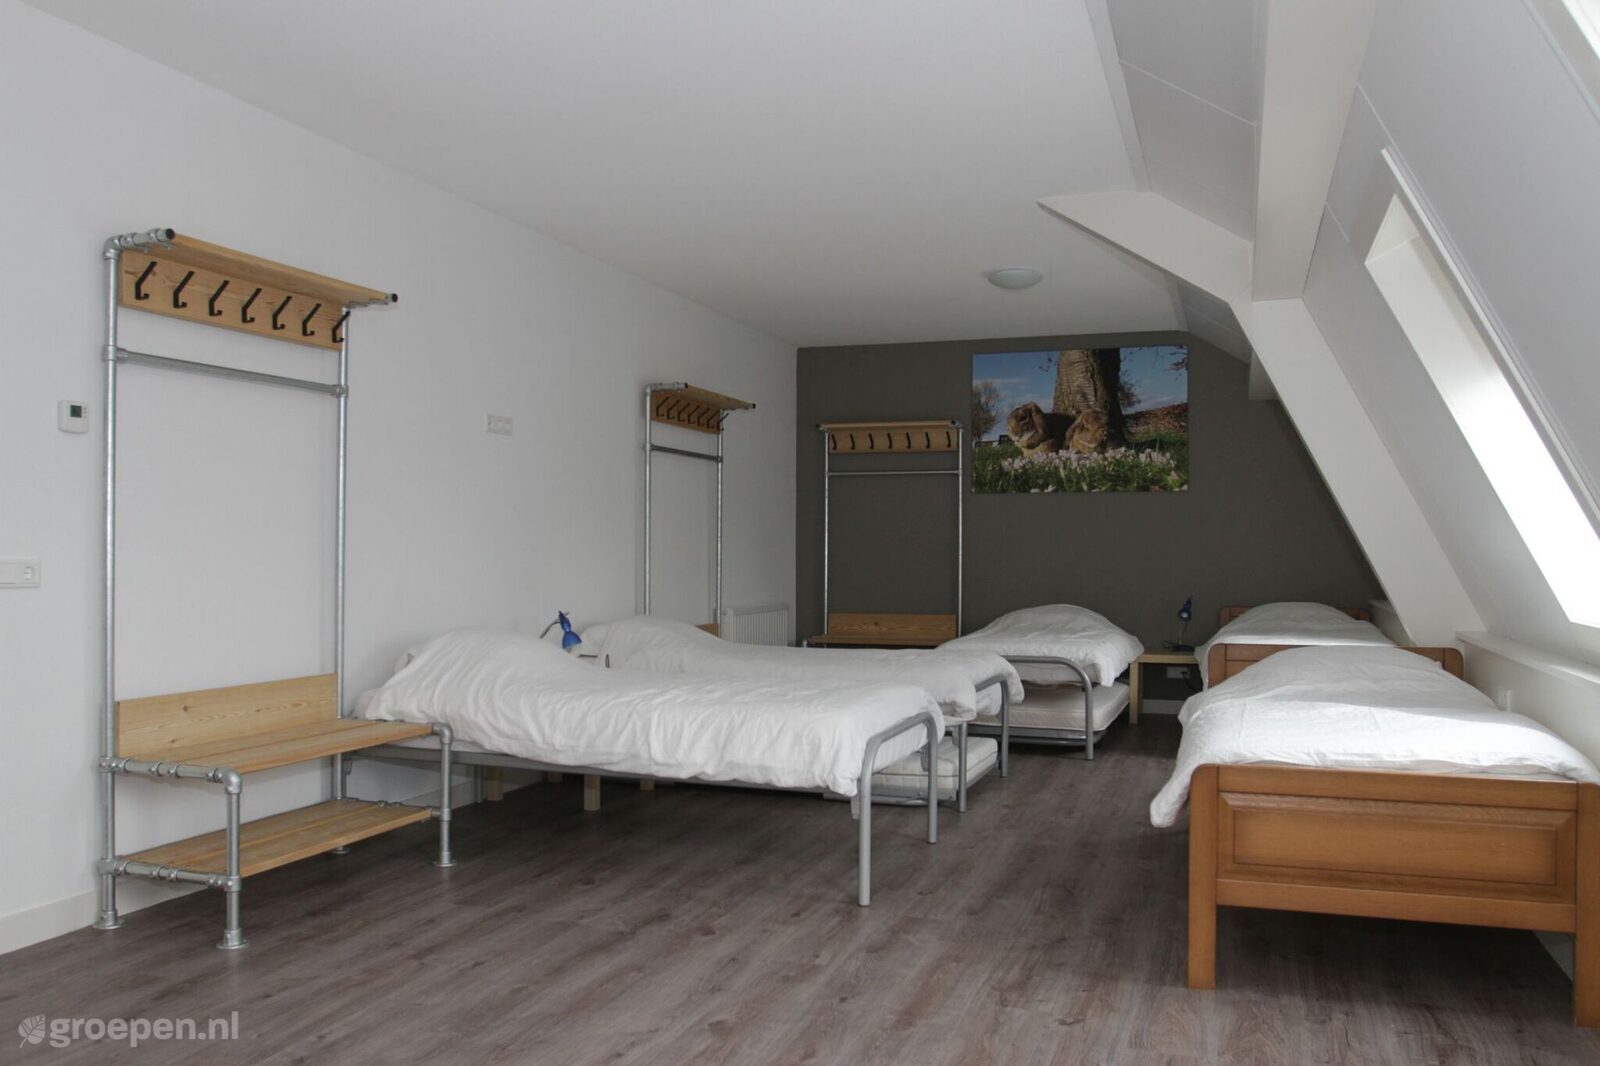 Group accommodation Punthorst